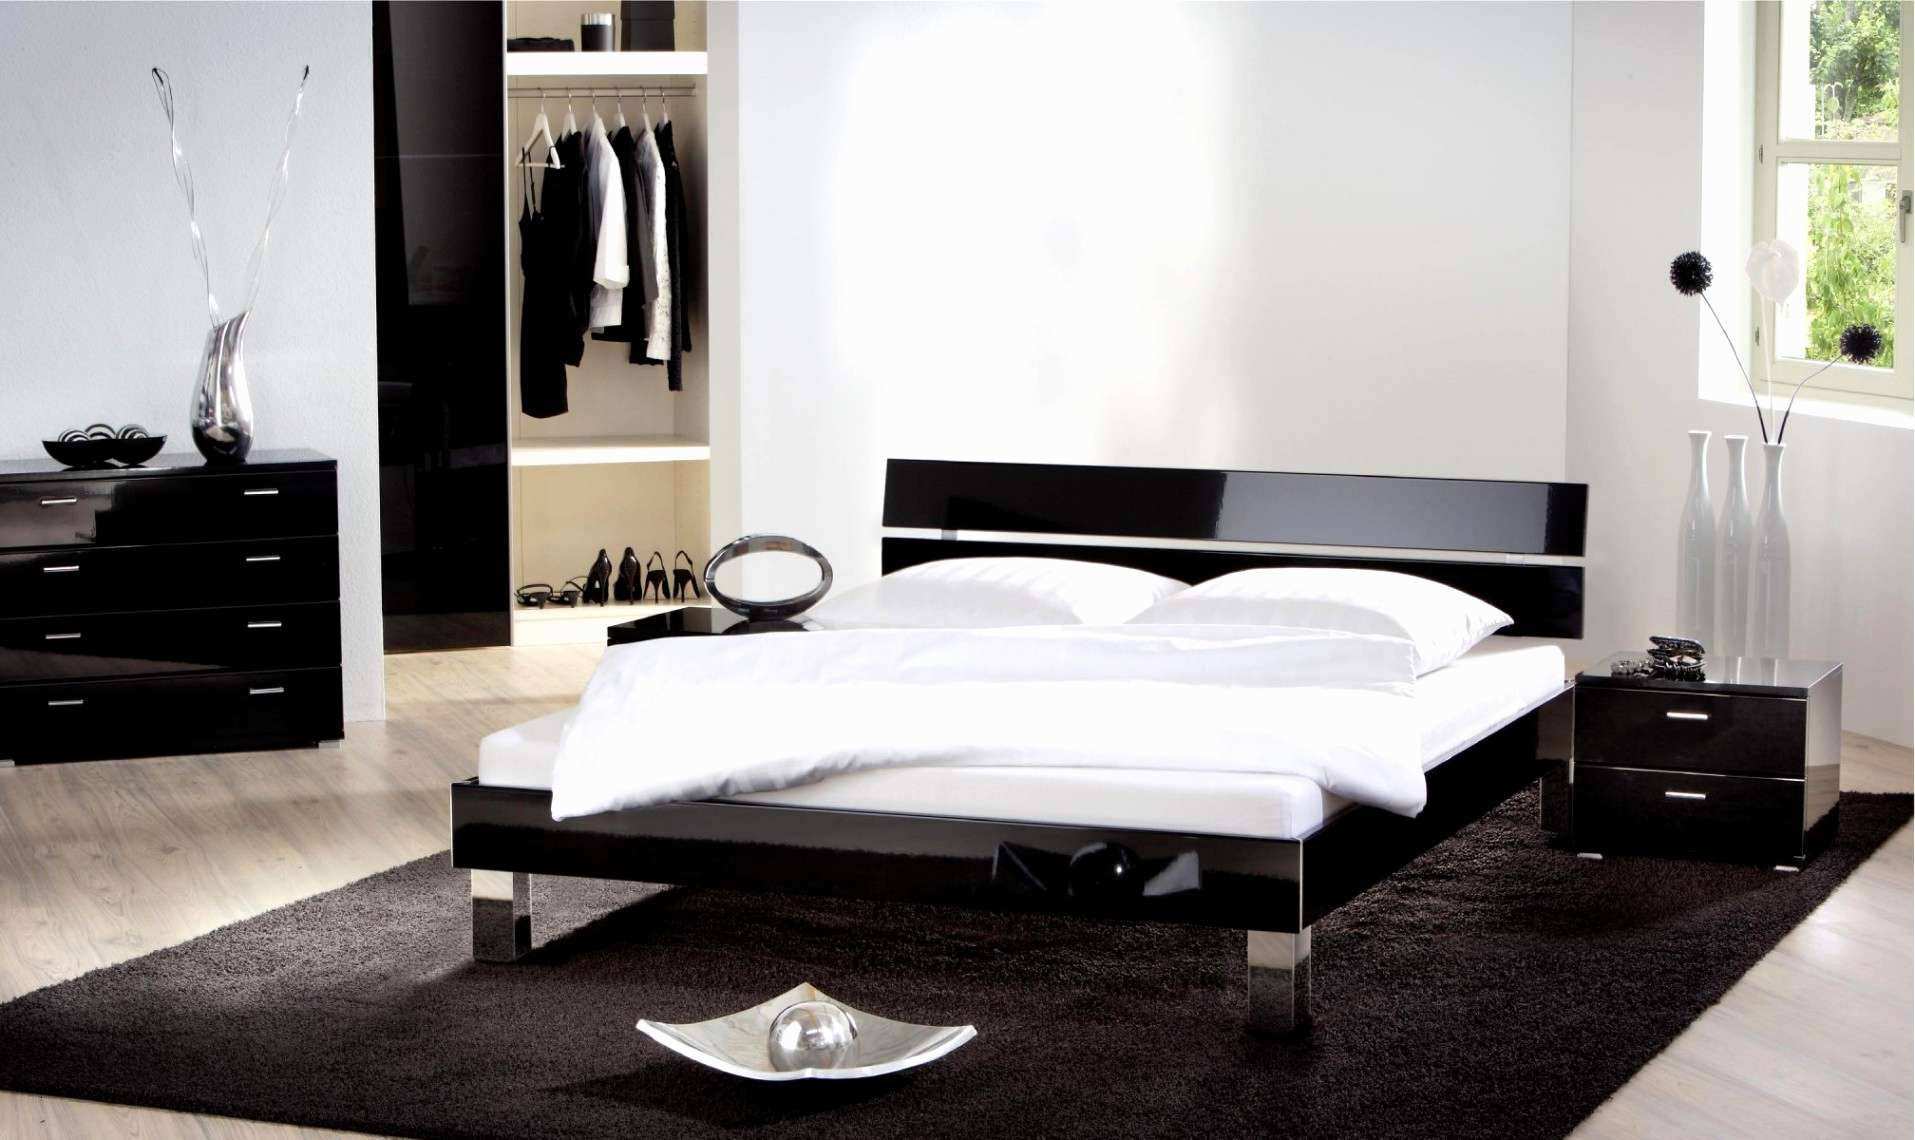 Diy Holz Frisch Luxus Deko Ideen Diy attraktiv Regal Schlafzimmer 0d